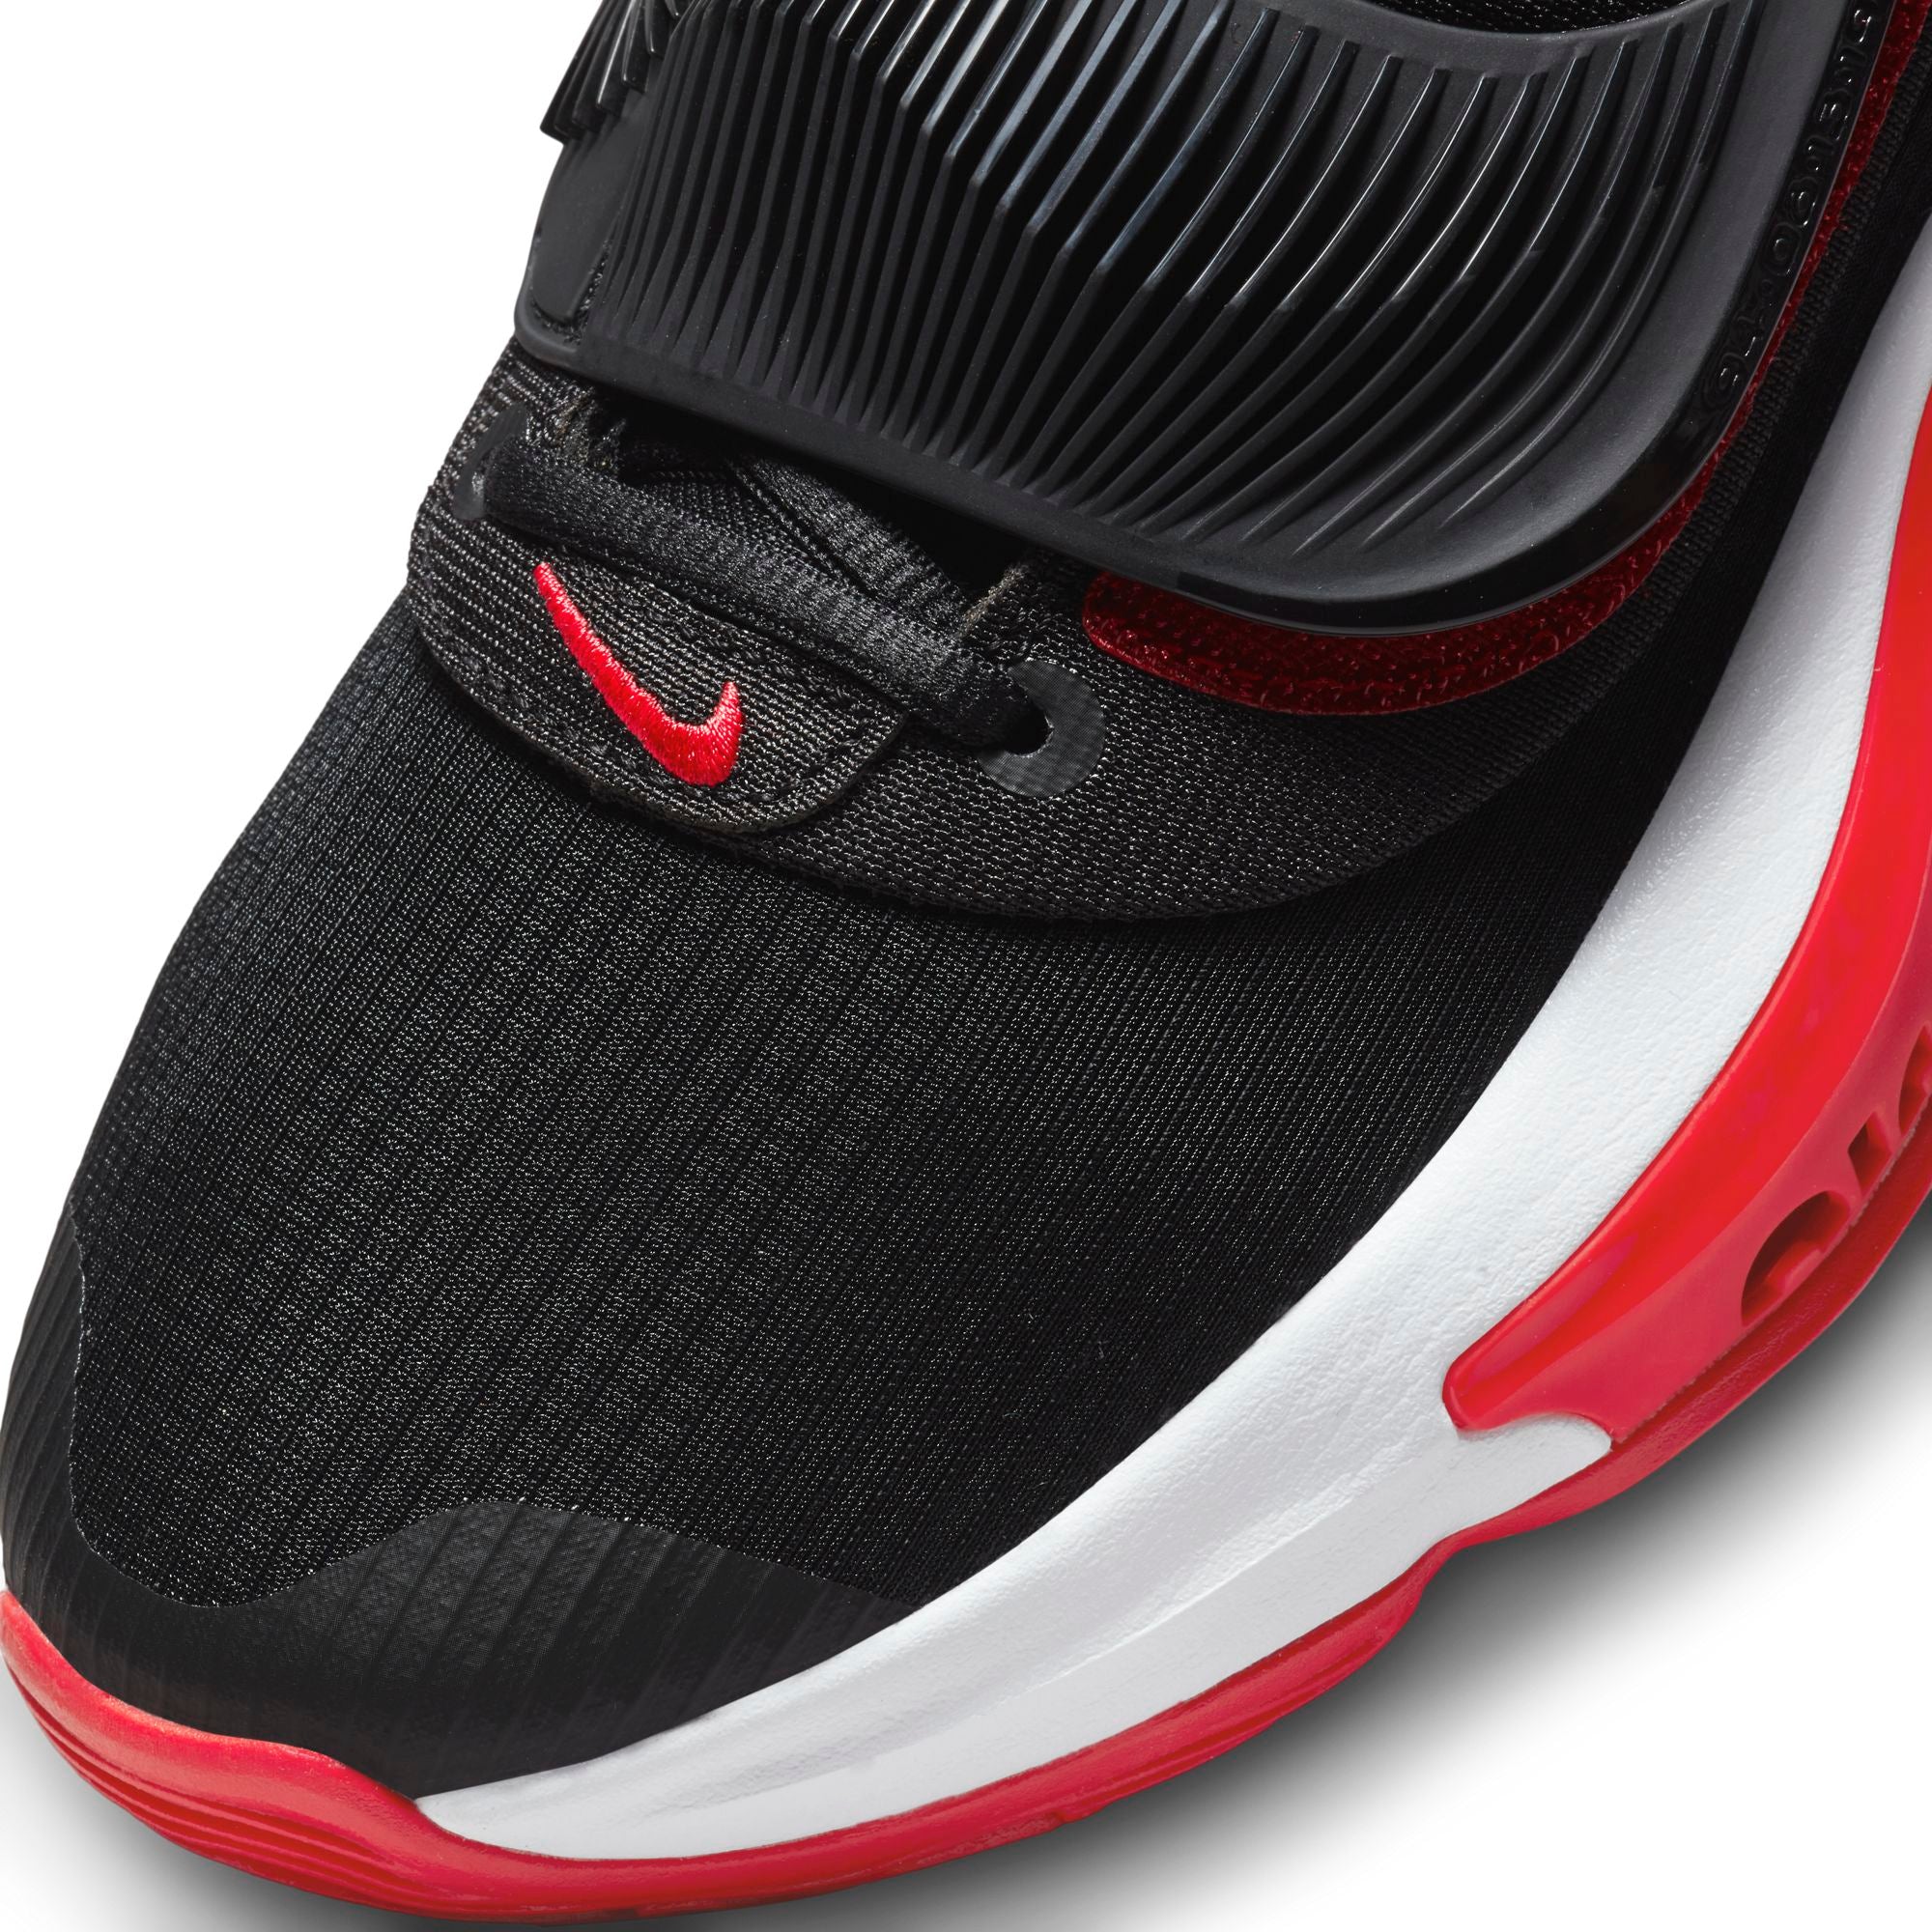 Nike Giannis Zoom Freak 3 Basketball Shoe - Black/White/University Red